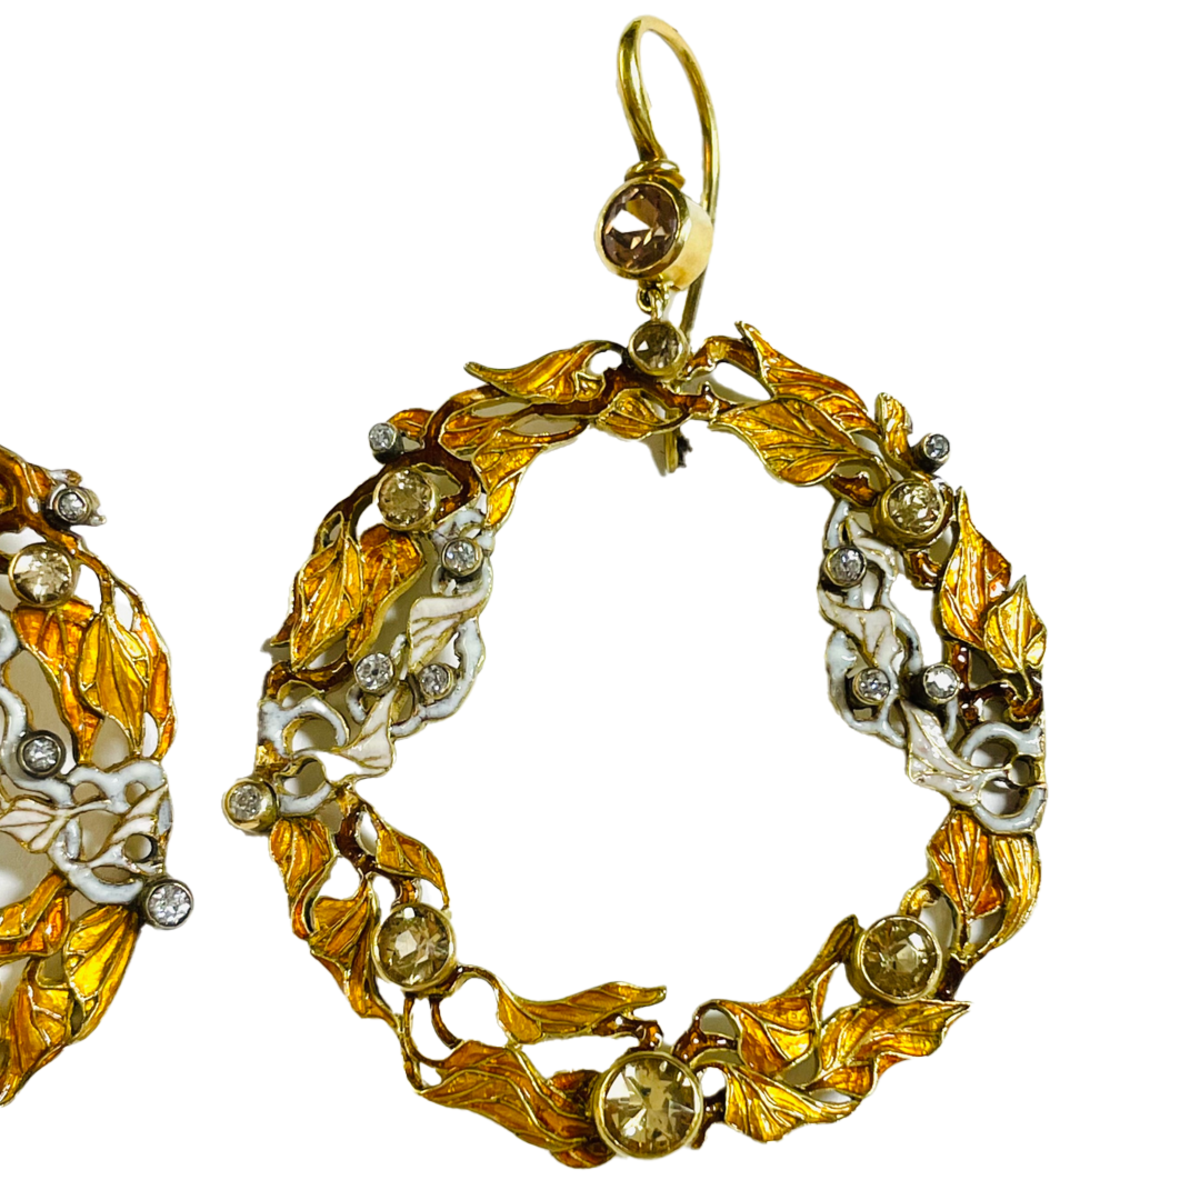 Art Nouveau 18KT Yellow Gold Diamond & Enamel Earrings close-up details